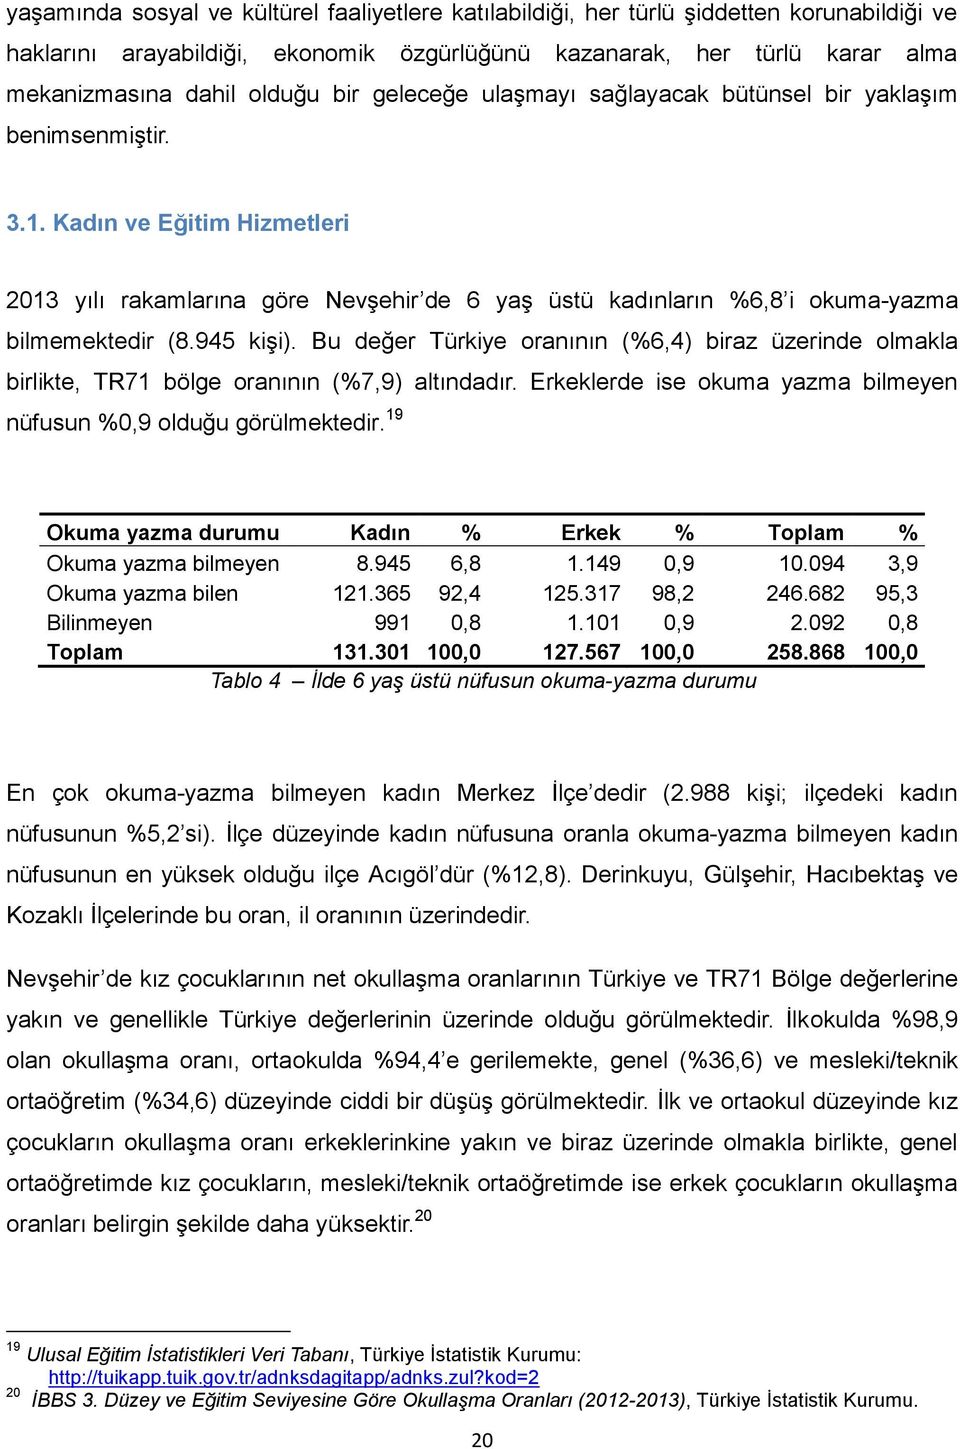 945 kişi). Bu değer Türkiye oranının (%6,4) biraz üzerinde olmakla birlikte, TR71 bölge oranının (%7,9) altındadır. Erkeklerde ise okuma yazma bilmeyen nüfusun %0,9 olduğu görülmektedir.